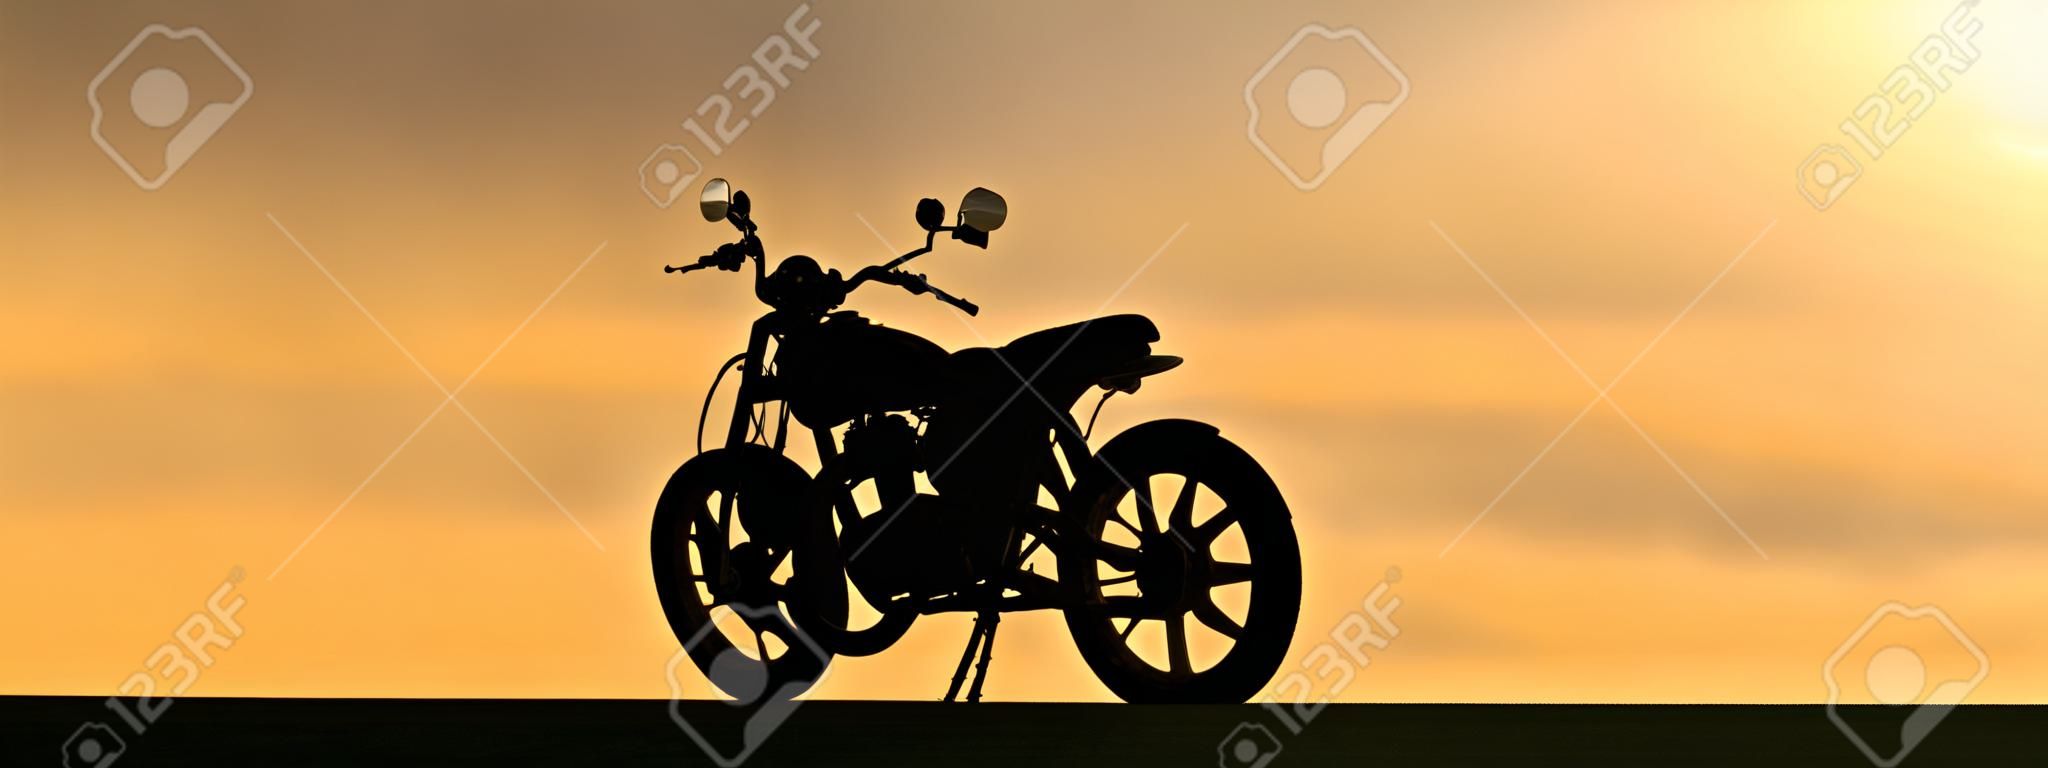 La sombra de una moto con reflejos metálicos al atardecer